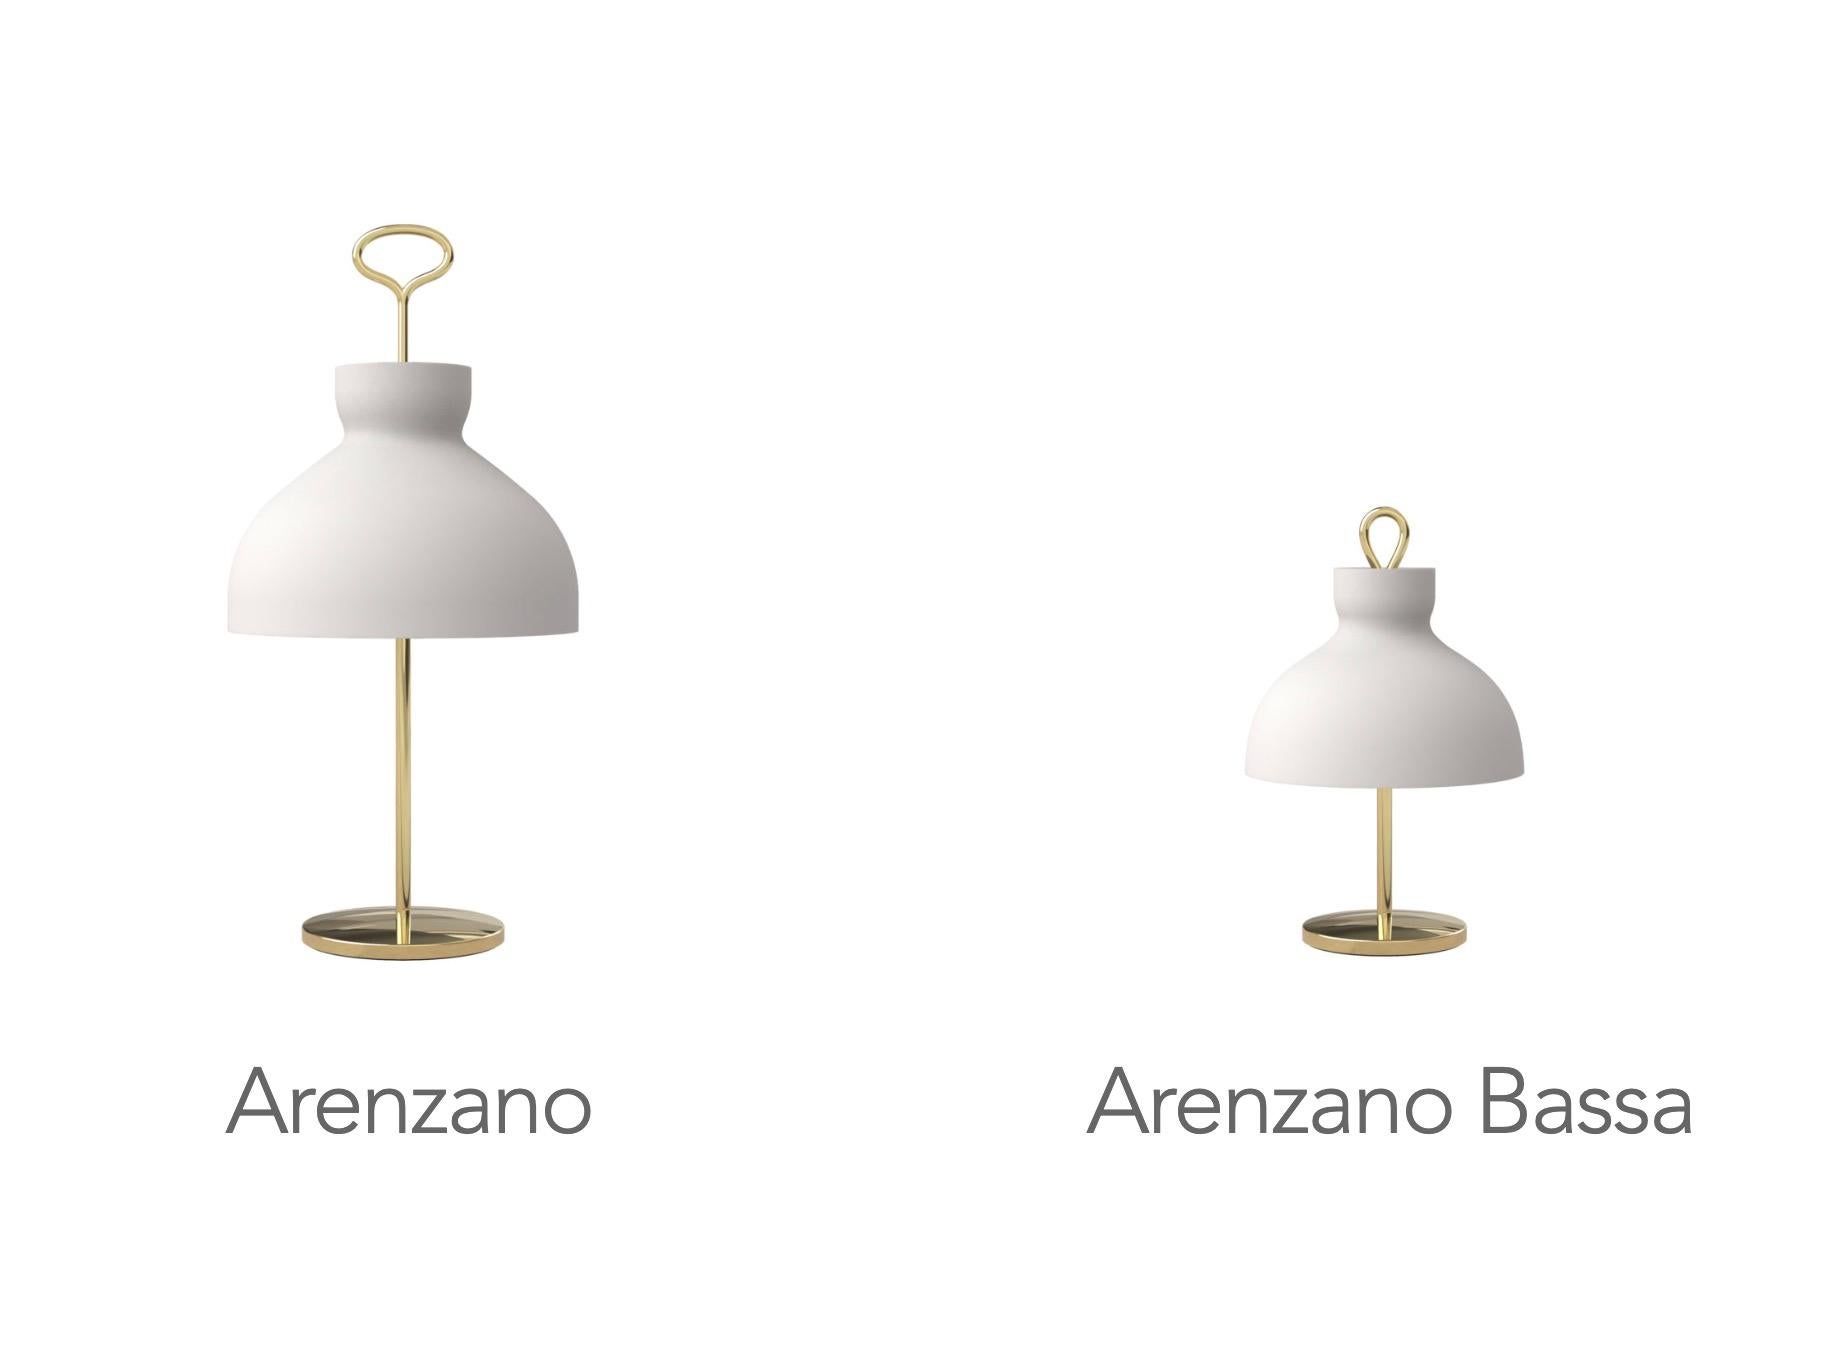 Ignazio Gardella 'Arenzano Bassa' Table Lamp in Glass and Satin Nickel For Sale 6